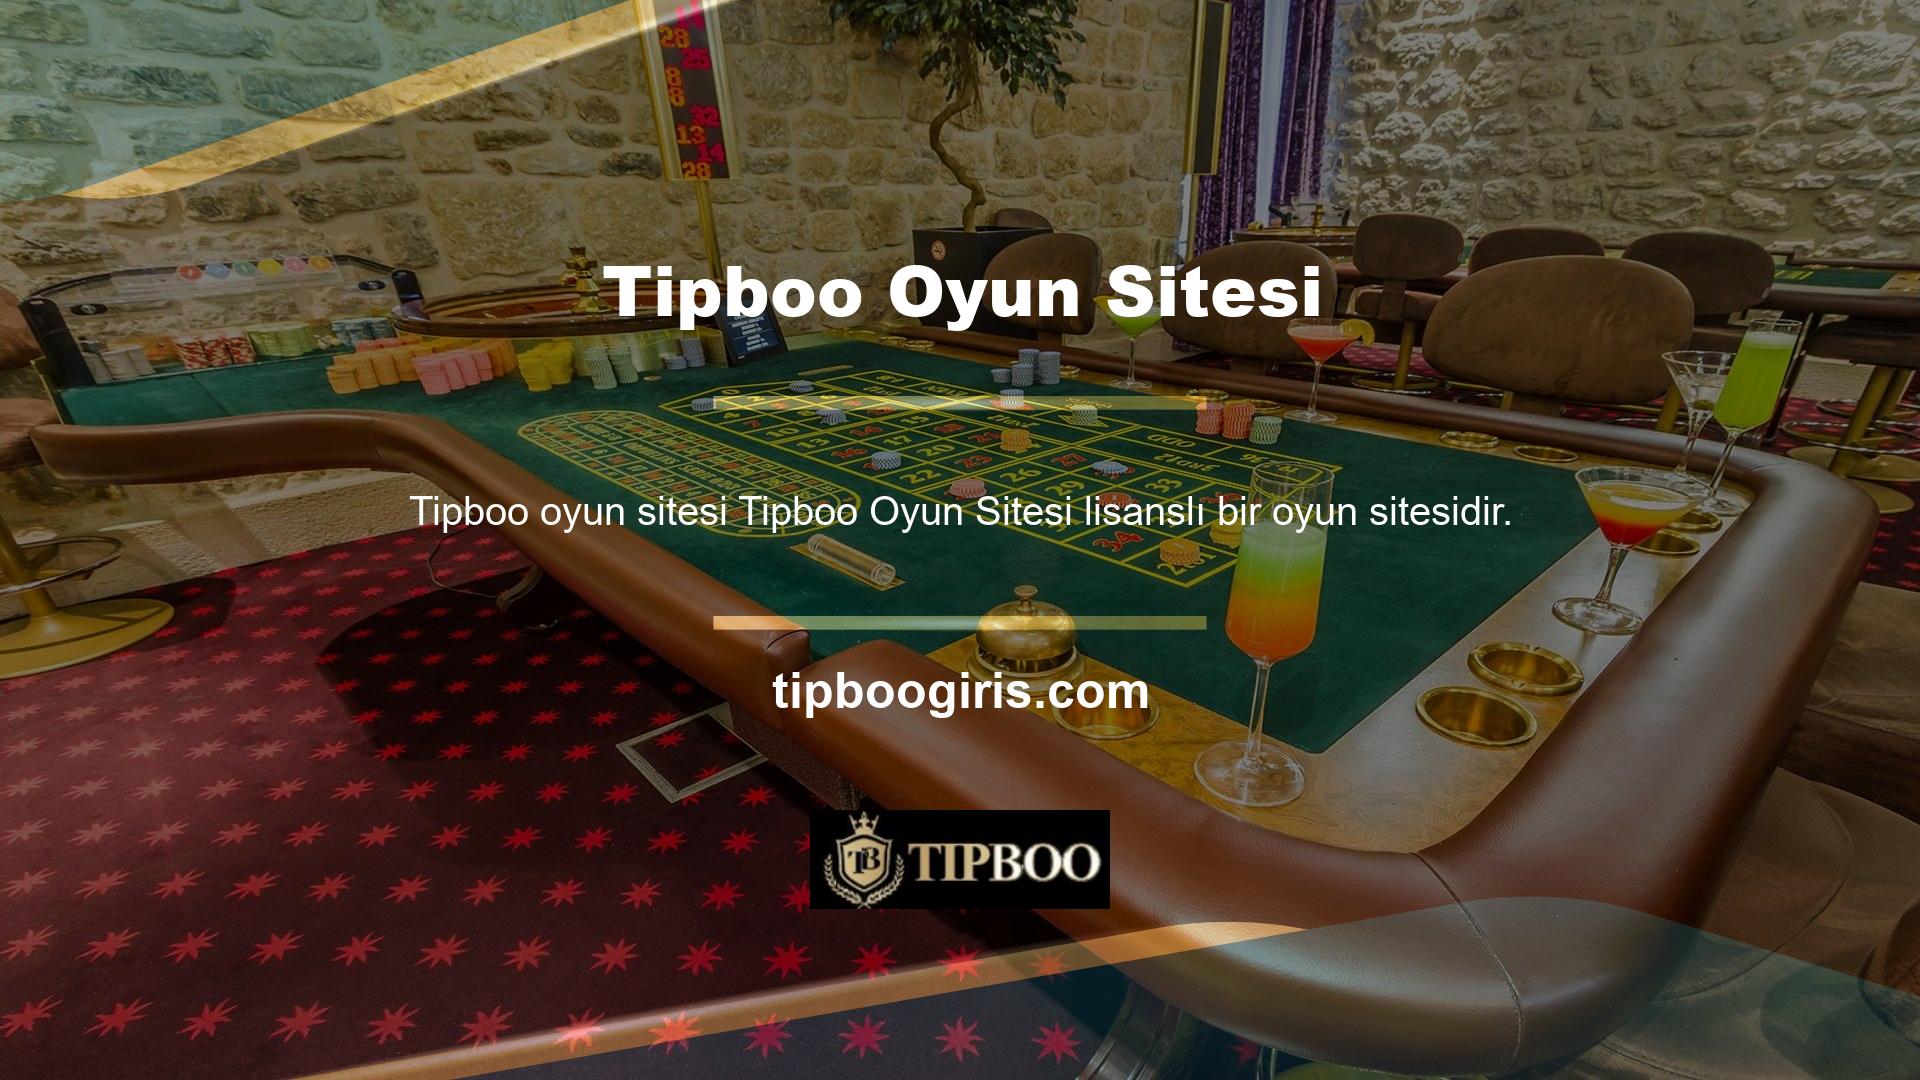 Tipboo oyun sitesi, üyelerine kendi ülkelerinde satın alınan lisansları kazanma şansı sunarken, aynı zamanda ücretsiz bonuslar da sunuyor